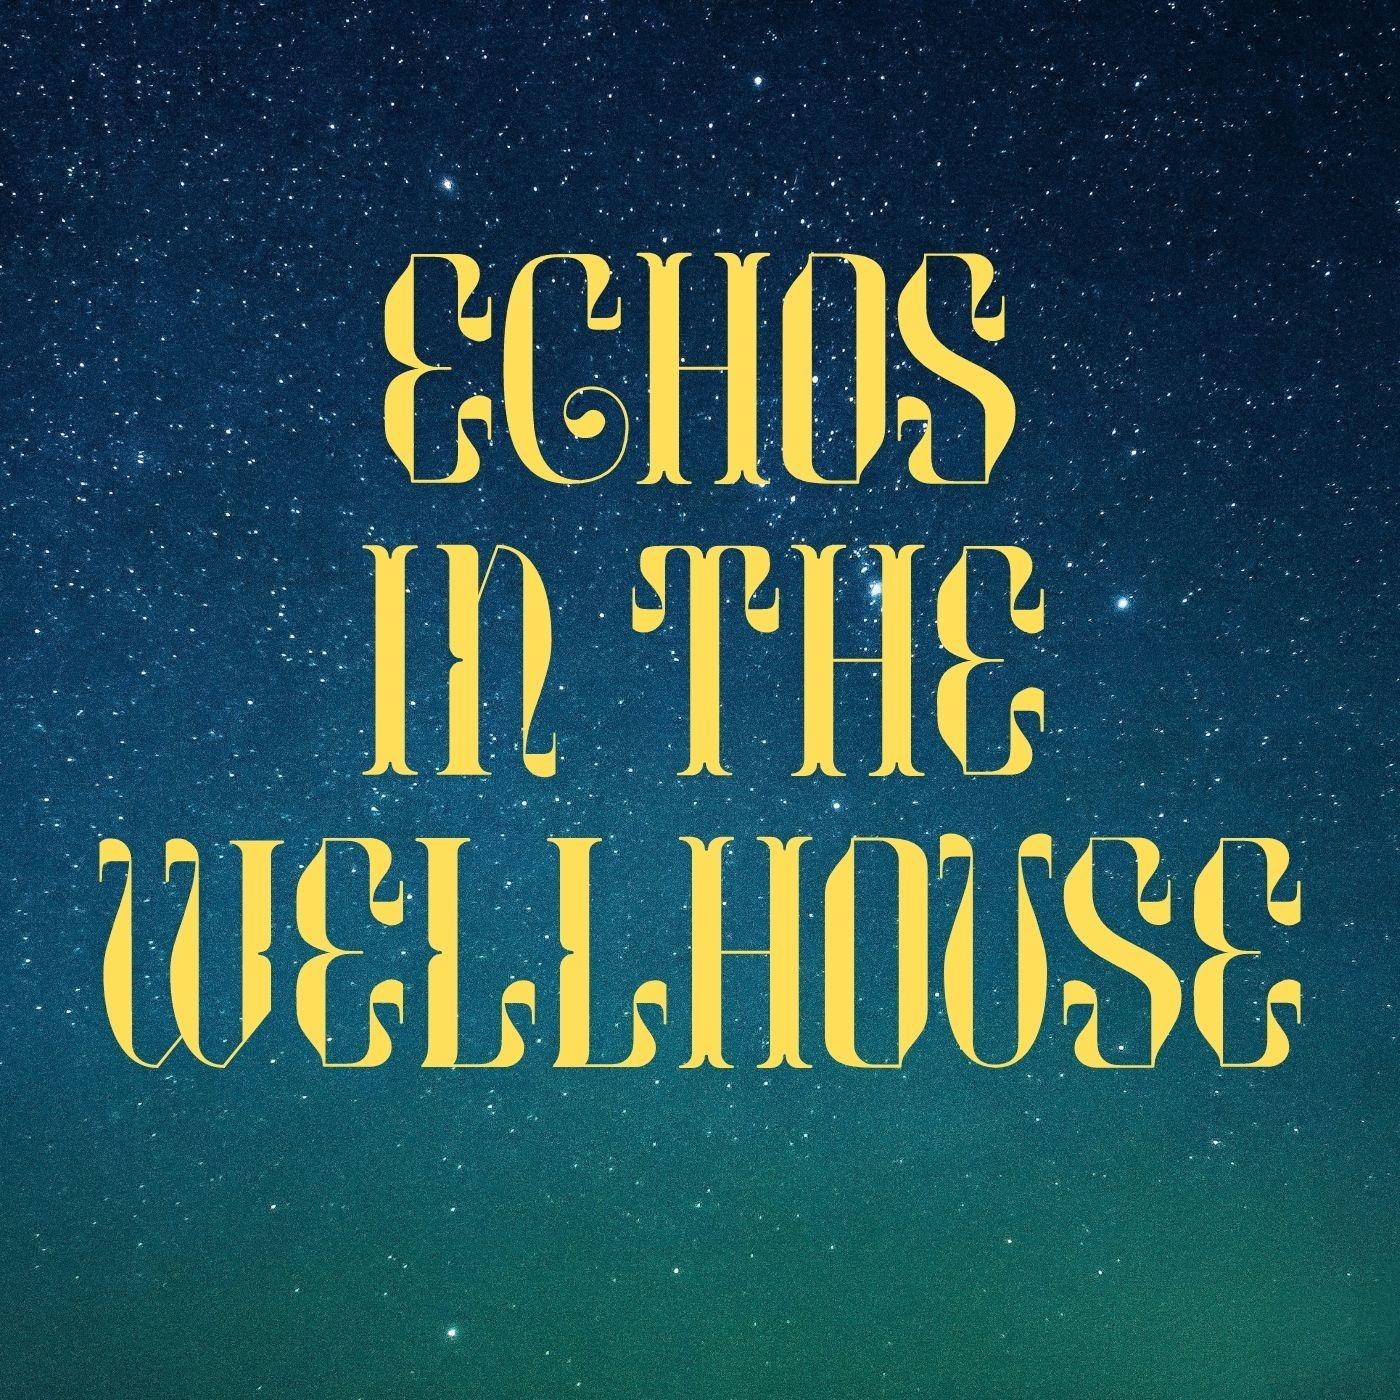 Echos in the Wellhouse